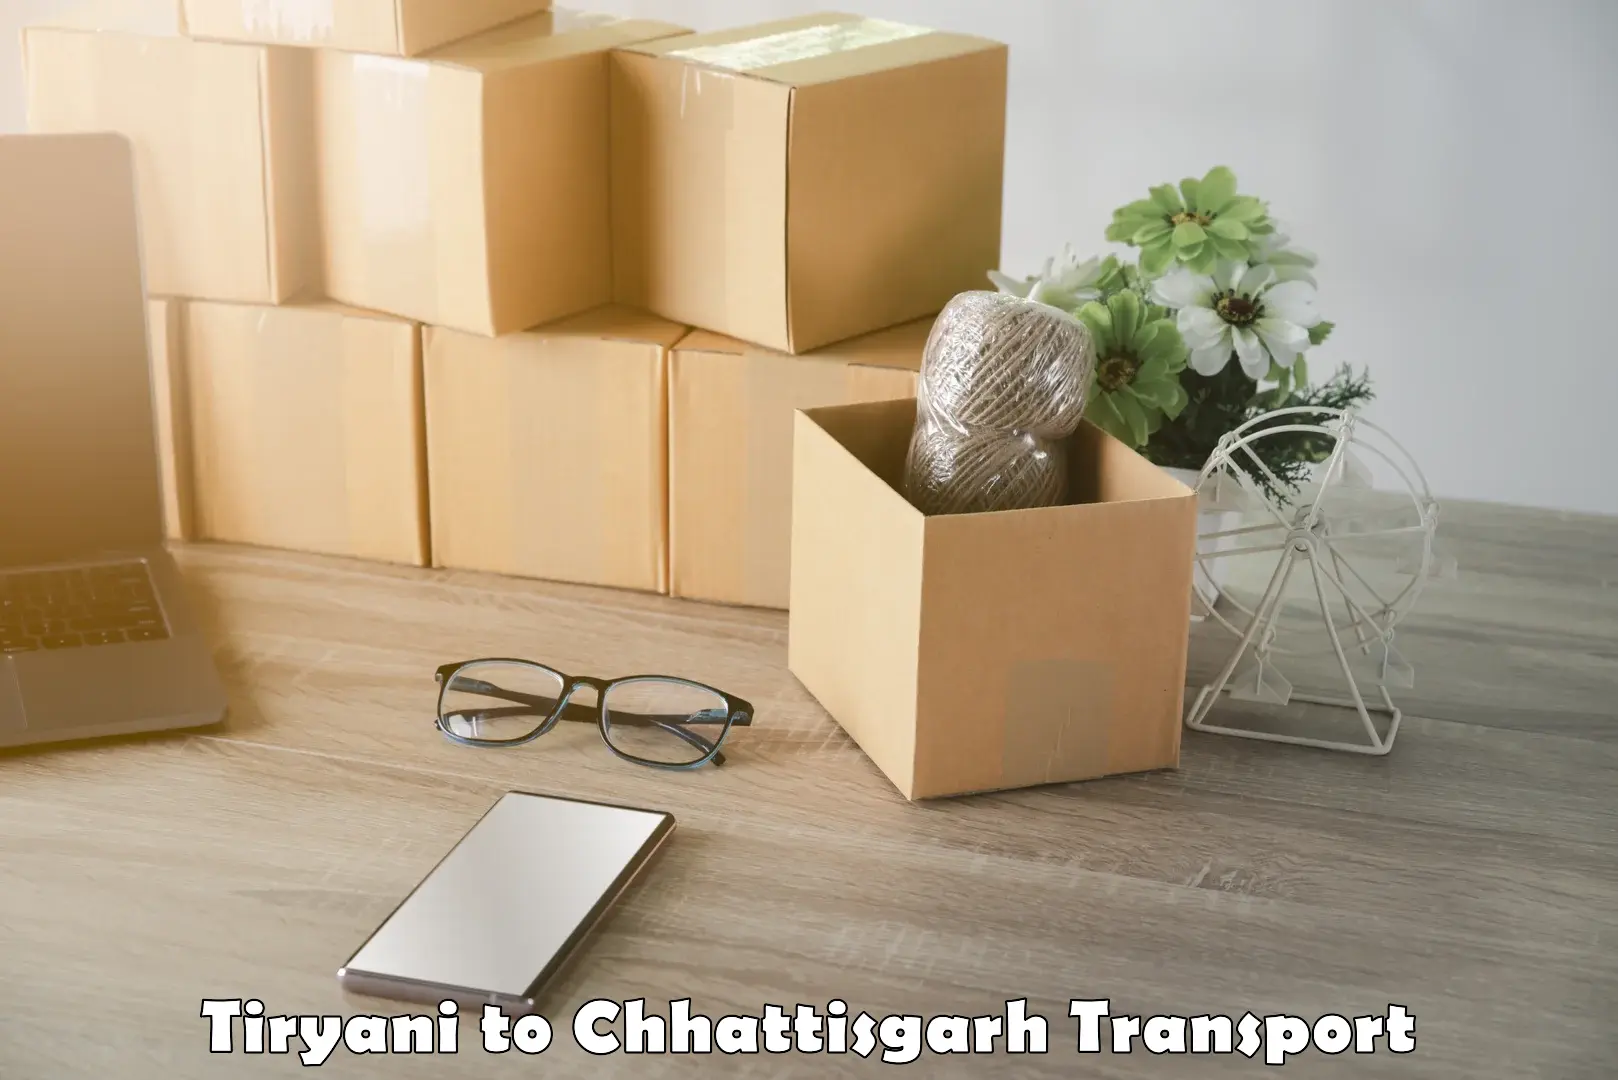 Interstate transport services Tiryani to Raipur